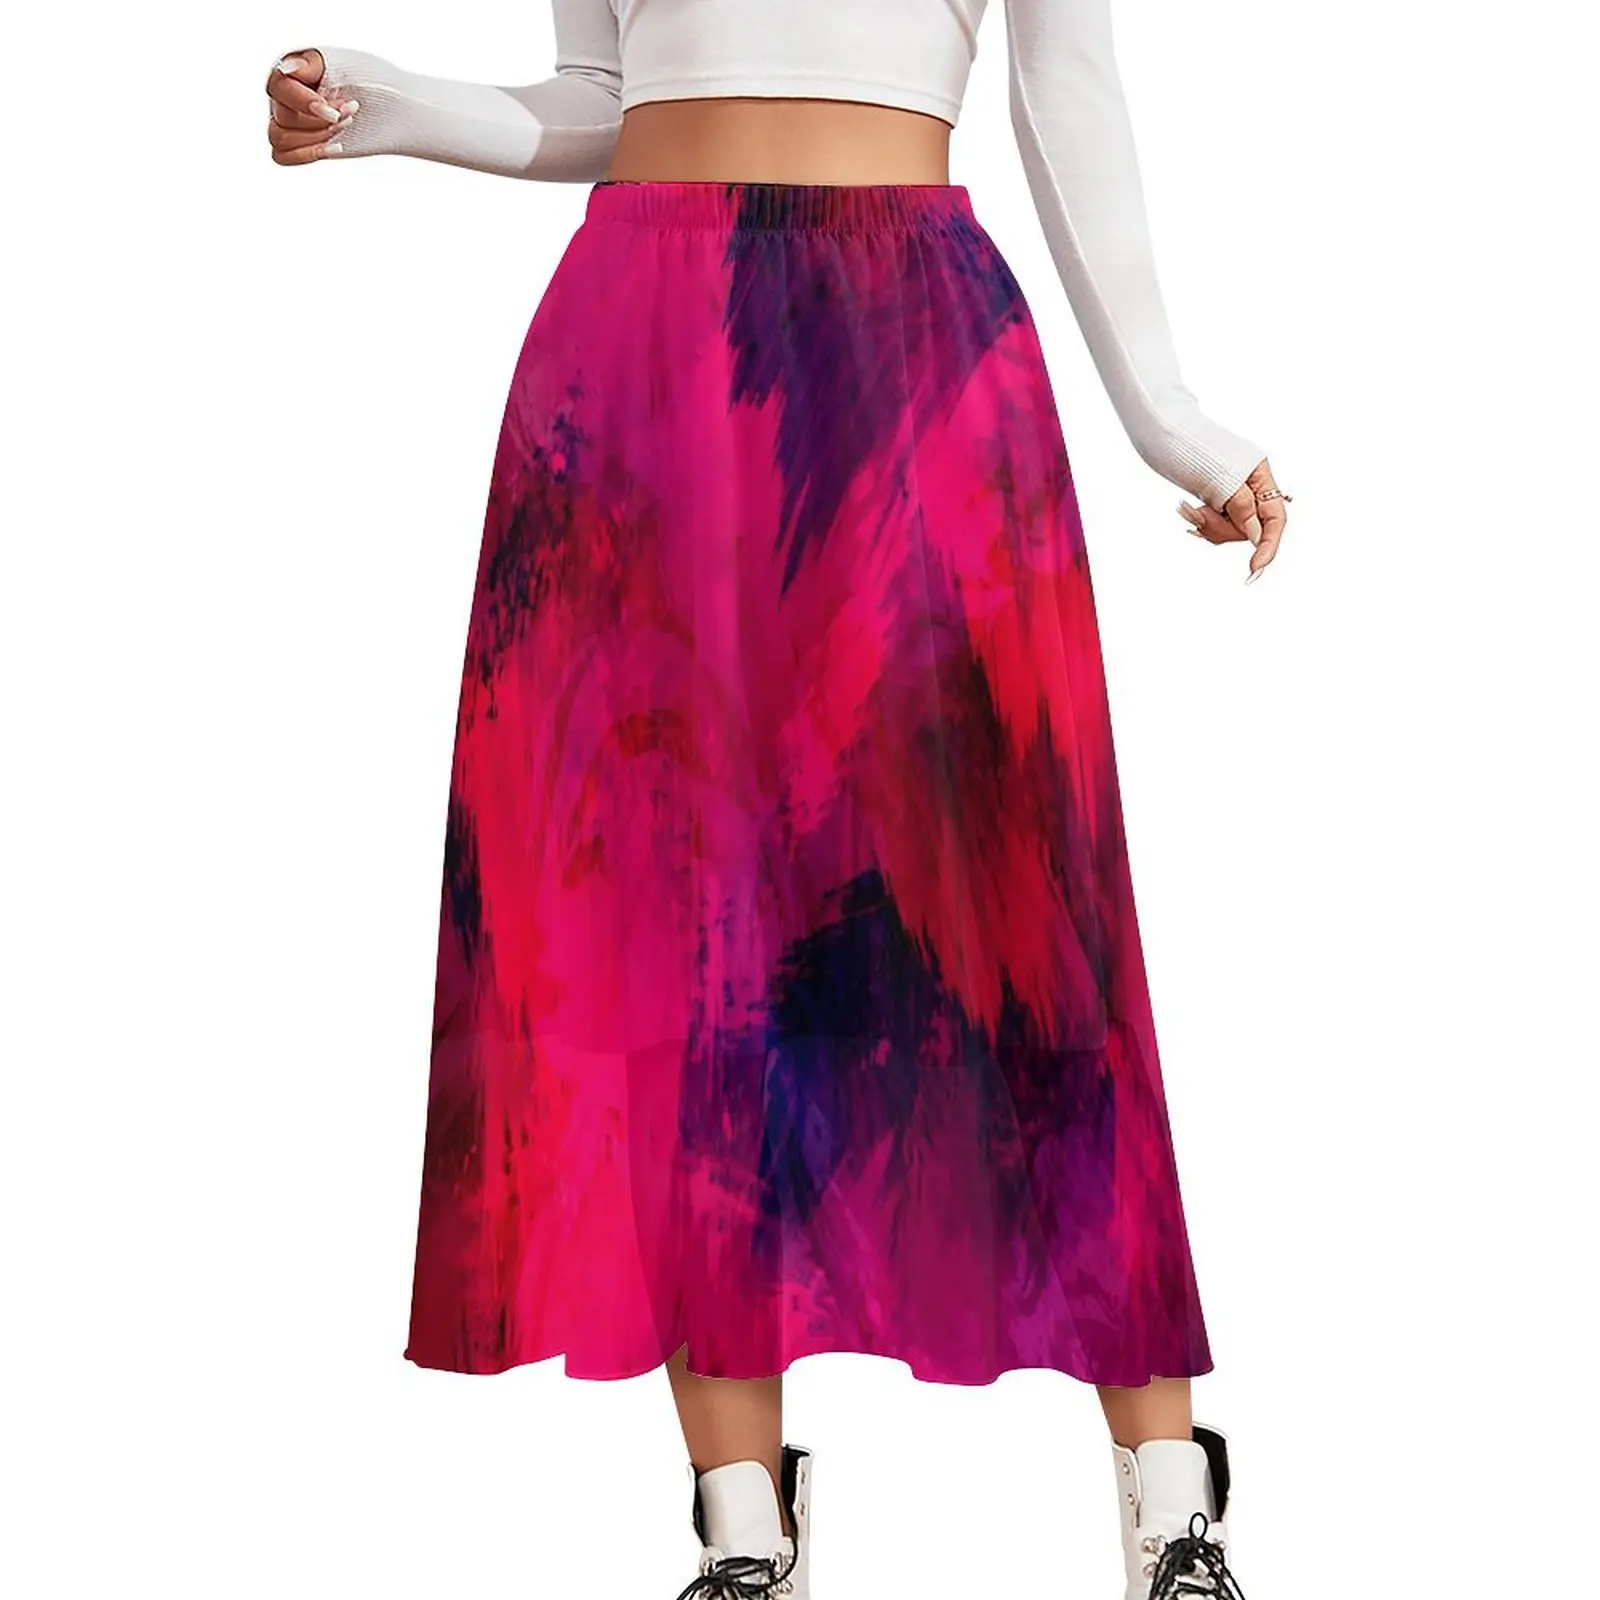 

Юбка с абстрактными кисточками, красно-фиолетовая длинная юбка в стиле ретро, дизайнерская уличная модная повседневная юбка с высокой талией, большой размер 2XL 3XL